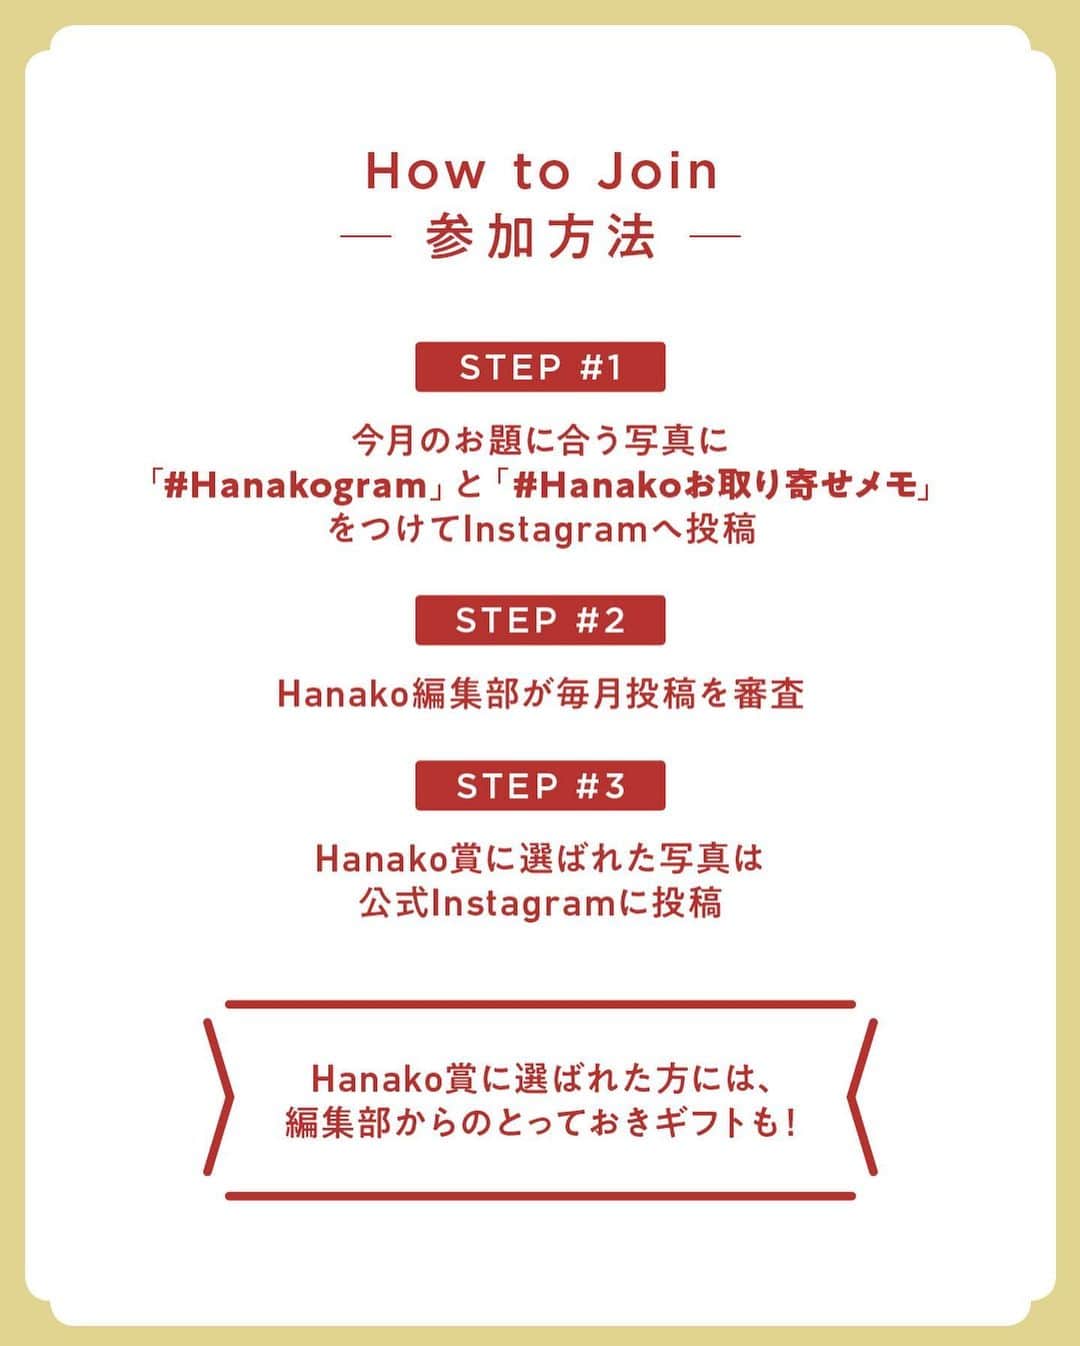 Hanako公式さんのインスタグラム写真 - (Hanako公式Instagram)「#4 Hanakoお取り寄せ図鑑🍙﻿ フードディレクター・野村友里さんがHanakoで連載中の『Good Neighbors,Good Suppliers』。 約6年の連載の中で出会ったお取り寄せ食材をご紹介します。﻿ ﻿ ﻿ 1.〈山田製油〉の「一番絞りごま油」﻿ 古いかまどに薪を焚き、ごまを丁寧に焙煎してから圧搾。「一番絞りごま油」は、創業当時より守り続けた製法でじっくり1カ月をかけて仕上げるそう。香ばしく豊かな香りとコクがありながら、軽やかな味わいなのでサラダにも使えます🐫﻿ ﻿ 2.〈木下酒造〉の「玉川 Time Machine 1712」﻿ 日本酒版デザートワインとも称される、江戸時代の製法で造る甘口のお酒。後を引く甘さは、食前酒やアイスクリームのトッピングにも。野村さんいわく、熱燗にするとまた違った味が楽しめるそう。和洋どちらのつまみとも、相性よし🍇﻿ ﻿ 3.〈Harvest Bay Kumihama〉の「ジャム」﻿ 京丹後の海沿いにある久美浜は、梨や桃、メロンなどの果物が名産品。ここで小さなホテルを営む須田悦子さんが作る季節のジャムは、地域の美しさを伝えています。たとえば梨なら、カルダモン、バニラ、カラメルと、ひと技効かせたフレーバー🍐﻿ ﻿ 4.〈孝太郎の酢〉の「夜のラムレーズン」﻿ 京都の名水で国産米を熟成させたまろやかな米酢と、沖縄産のラム酒で味付けしたラムレーズン。レーズンとラム酒の甘味を生かすため、砂糖は不使用。アイスクリームにかけて、大人のデザートとして楽しむのがおすすめ🍨﻿ ﻿ 5.〈千代豆腐店〉の「生ゆば」﻿ 水と豆乳を混ぜたものでふやかした大豆を搾る、濃厚な豆乳が有名な店。その豆乳から出来る生ゆばには、大豆のふくよかな味が凝縮。無添加のため賞味期限は短いですが、それでも野村さんが取り寄せたくなるという名品🥛﻿ ﻿ 6.〈八木酒造〉の「梅酒」﻿ 鎌江戸時代以前に創業した蔵元を継承する酒蔵。とろんと濃厚な口当たりの秘密は西吉野の梅林で採れた南高梅の果肉にあり。ノンアルはお酒で割っても◎﻿ ﻿ 7.〈くるみの木 cage〉の「奈良のクッキー」﻿ 卵やバター、小麦粉は使わずに、奈良県産の米粉や玄米粉で作る素朴な品。ほろっと繊細ながら、素材の味わいが口いっぱいに🐿﻿ ﻿ ﻿ 8.〈ターンムファーム〉の「メローハバネロ」﻿ オーナー・近藤卓さんが石垣島でハバネロに出合ったのをきっかけに生まれた「メローハバネロ」は、鮮烈な辛味だけでなくフルーティな甘味が感じられる。パスタやカレーはもちろん、納豆とも好相性🌶﻿ ﻿ 9.〈丸瀬家〉の「玄米甘酒」﻿ 鳥取県大山の麓の、自然栽培の田畑で「自然と調和する」農業を目指す丸瀬和憲さん・由香里さん夫妻。栽培した米のおいしさを存分に味わえるよう、米と麹と水のみで作る。一口で米のパワーを感じられる濃厚さで、調味料にも🌾﻿ ﻿ 10.〈可笑しなお菓子屋 kinaco〉の「ビスケ」﻿ 植物性食材のみで作る「ビスケ」は、知人や親交のあるお店による材料で。季節で替わり、今回は塩麹(右)とピーカンナッツショコラ(左)。素材のおいしさを通し、温かな作り手の気持ちを感じ取れる。取り寄せは不定期🍪﻿ ﻿ 11.〈西河商店〉の「わさびオイル」﻿ 鳥取名産の関金わさび。その風味をコメ油にそのまま閉じ込めたようなオイルだ。カルパッチョやサラダだけでなく焼肉やチーズにも。2~3滴でツンとフレッシュな香りを堪能できる。美しく爽やかなパッケージも魅力の一つ🌿﻿ ﻿ 12.〈manma naturals〉の「あしたばソース」﻿ 「今日摘んでも明日には発芽する」といわれるほど強い生命力を持つ、明日葉をふんだんに使用。野性味のある苦さとオリーブオイルの爽やかな香りが相性抜群。ゆでたパスタやジャガイモにからめるだけで満足度の高い一品に仕上げてくれる🍃﻿ ﻿ 13.〈Food Hub Project〉の「カミヤマメイト」﻿ 土地の食材をその土地に伝わる方法でいただく“土産土法”を体現する〈FoodHubProject〉。農家で作られていたおやつを再現したこちらは、小麦粉に米粉や米ぬか、米油と豆乳を混ぜたもの🍚﻿ ﻿ 14.〈濱醤油〉の「塩こうじ」﻿ 創業120年以上の歴史ある醸造場が作る塩麹は加熱殺菌せず「生きた」状態で届けられる。徳島産の米と長崎産の塩など、素材はすべて国内の信頼する作り手から。ほかのメーカーの塩麹より塩分控えめに調整した、まろやかな味がこだわり。﻿ ﻿ _______________________________________﻿ ﻿ ＼ #Hanakogram 投稿募集中！／﻿ 📌参加方法はスワイプしてチェック！﻿ 期間は2020/7/10〜2020/8/9です。﻿ ﻿ _______________________________________﻿ ﻿ ﻿ 【Hanako1186号_2020年の今こそ取り寄せたいもの発売！】﻿」7月25日 23時43分 - hanako_magazine